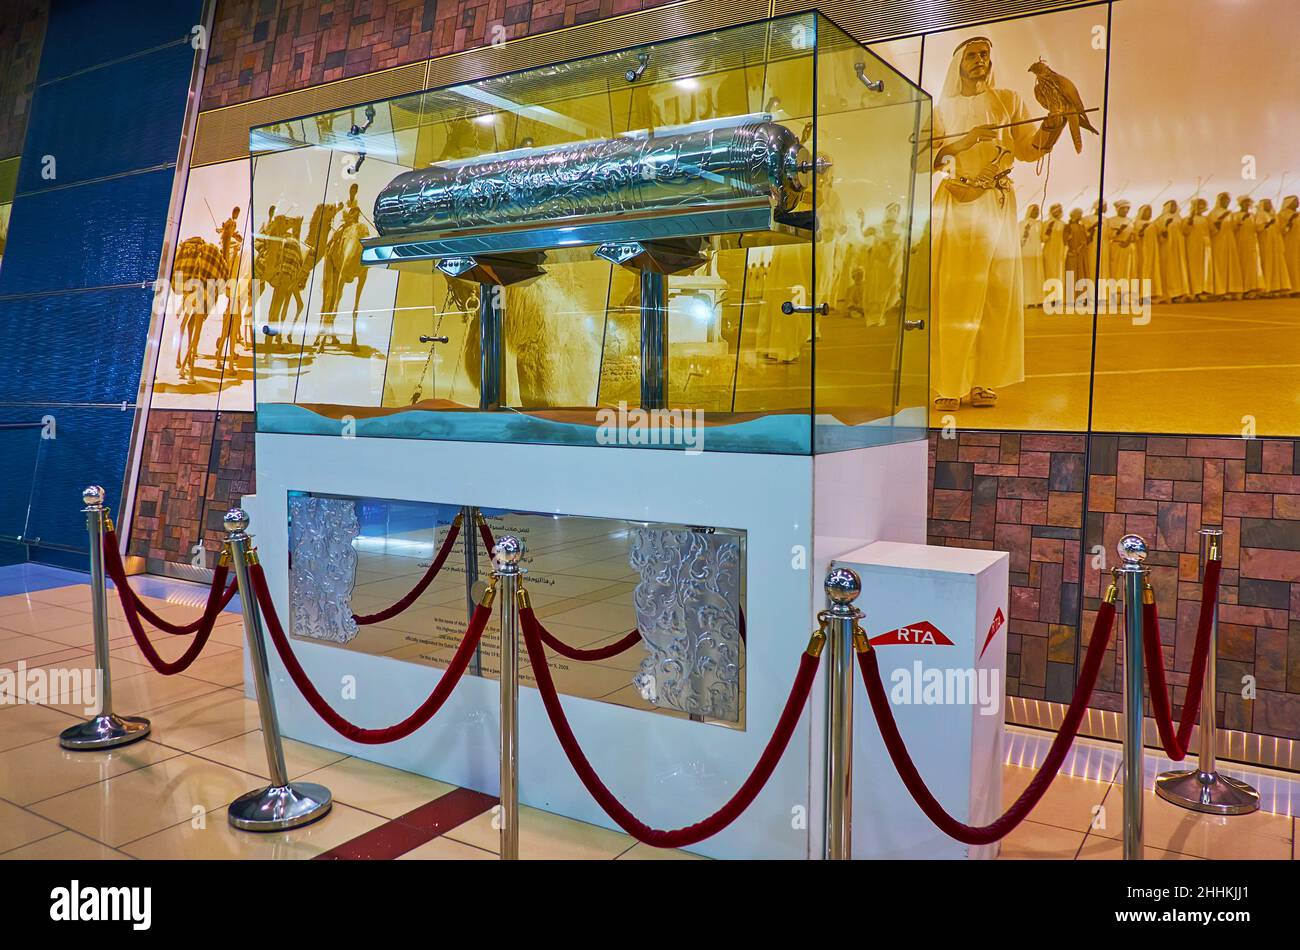 DUBAI, VAE - 7. MÄRZ 2020: Der Pavillon der U-Bahn-Station Union ist mit einer Zeitkapsel und einem Bild arabischer Männer in traditioneller Kleidung mit falc geschmückt Stockfoto